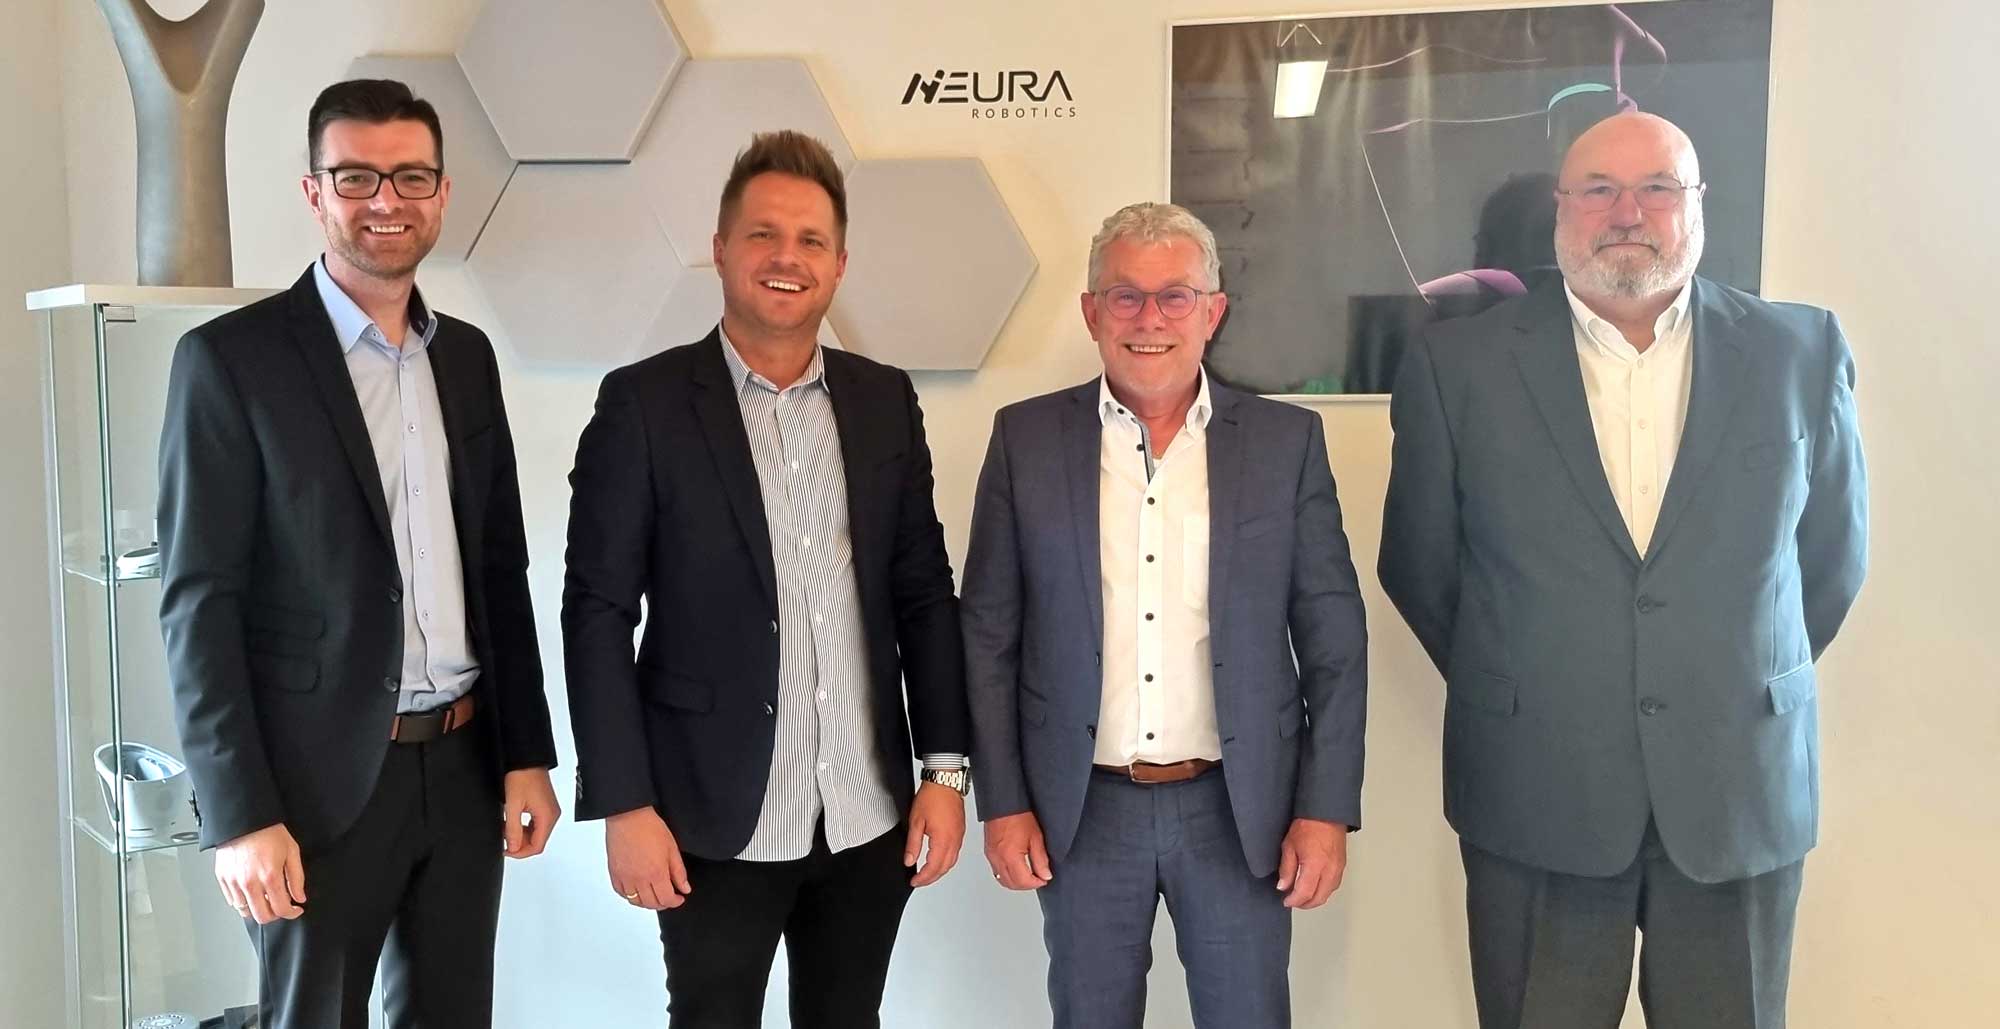 Unterzeichnung des Partnervertrag zwischen Neura Robotics und JP Industrieanlagen, Alexander Kemler, David Reger, Johann Paulus, Holger Gotthelf